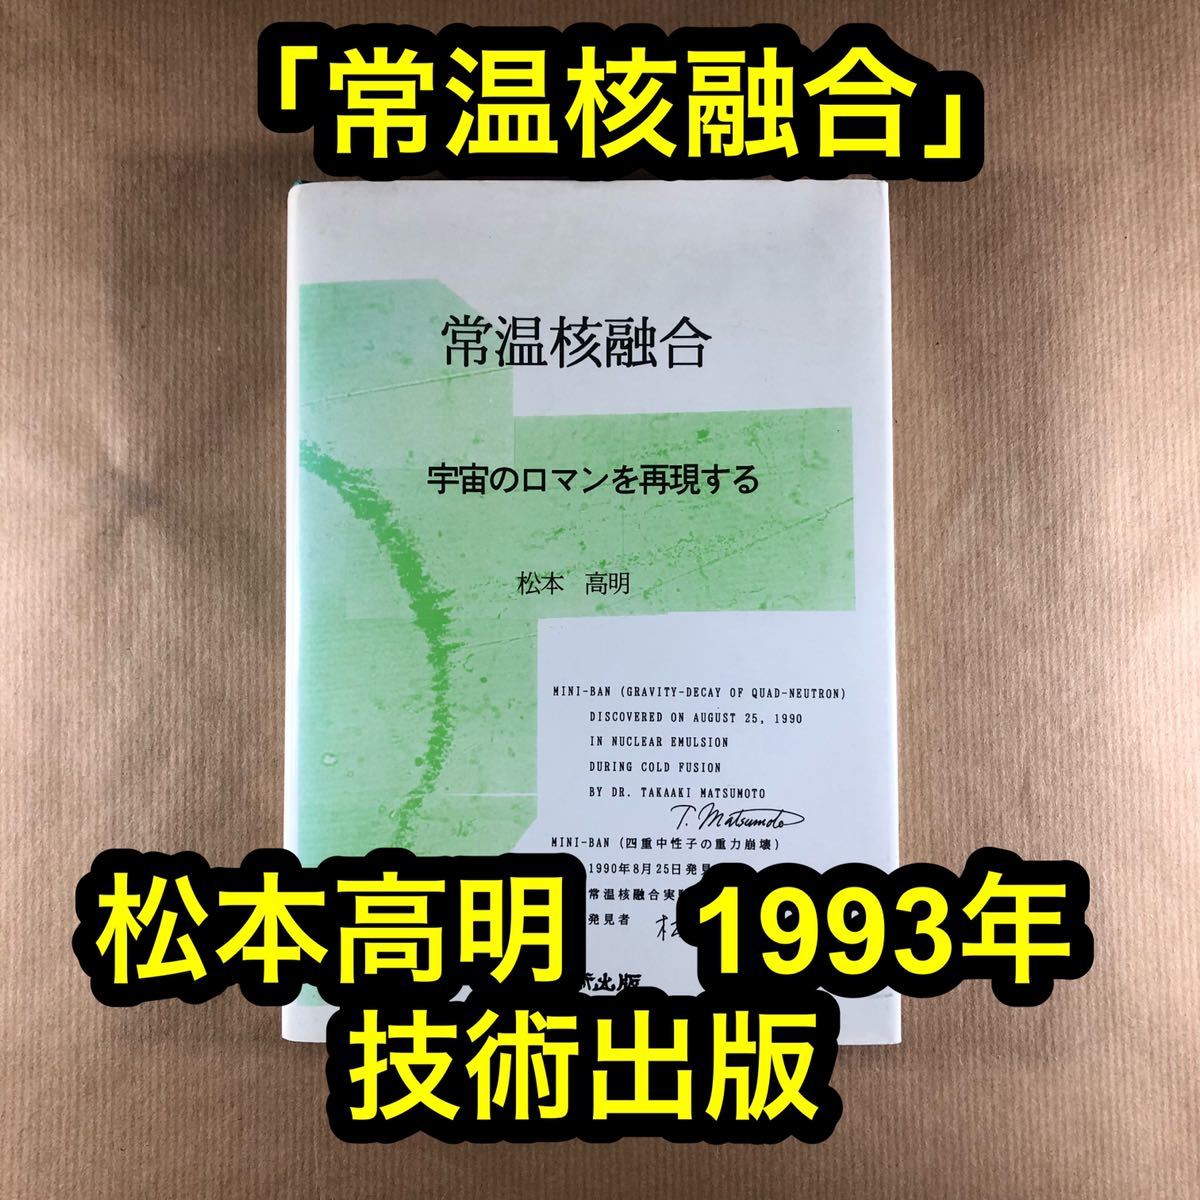 「常温核融合」松本高明 1993年 技術出版 723